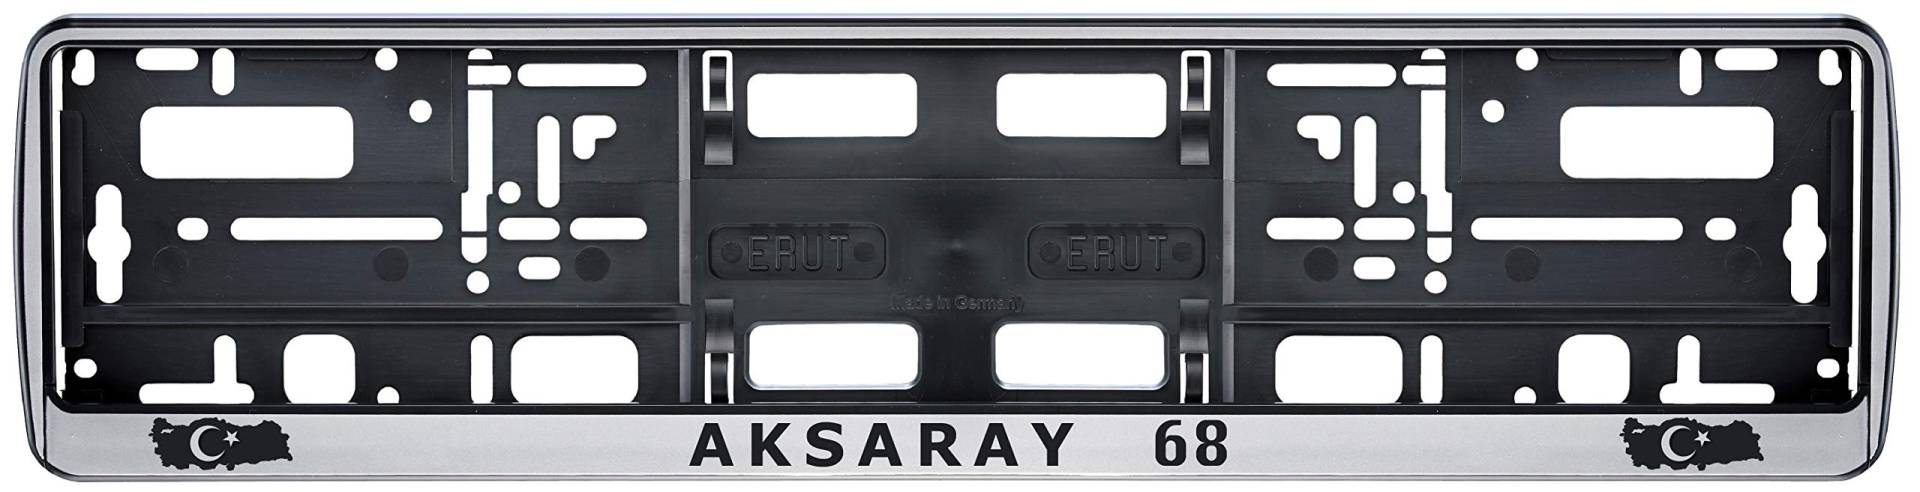 Auto Kennzeichenhalter in der Farbe Silber/Schwarz Nummernschildhalterung Auto, Nummernschildhalter Türkei Flagge 68 Aksaray 2 Stück von aina